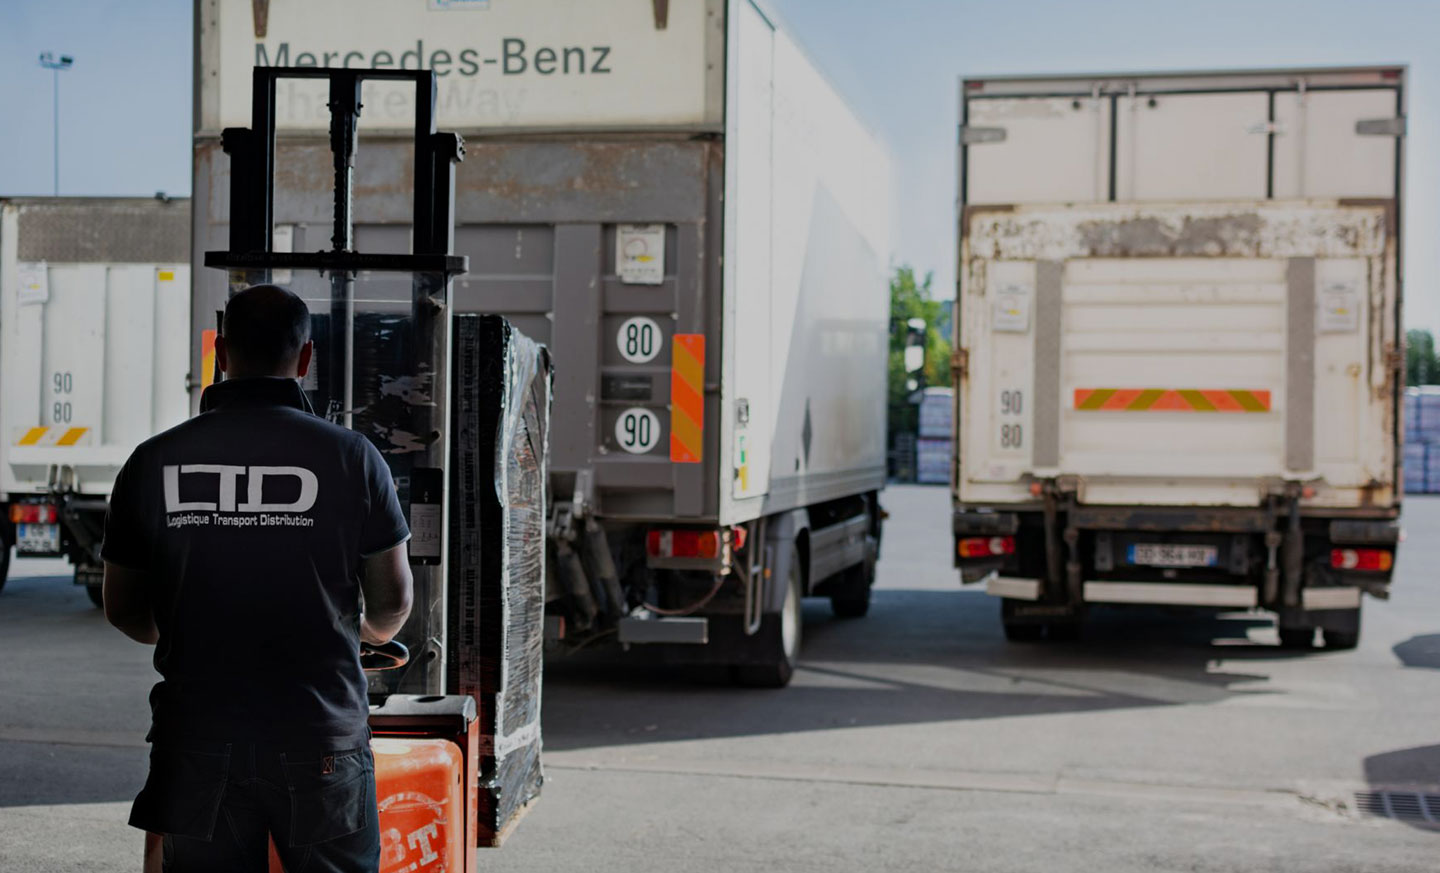 LTD Logistique Transport Distribution